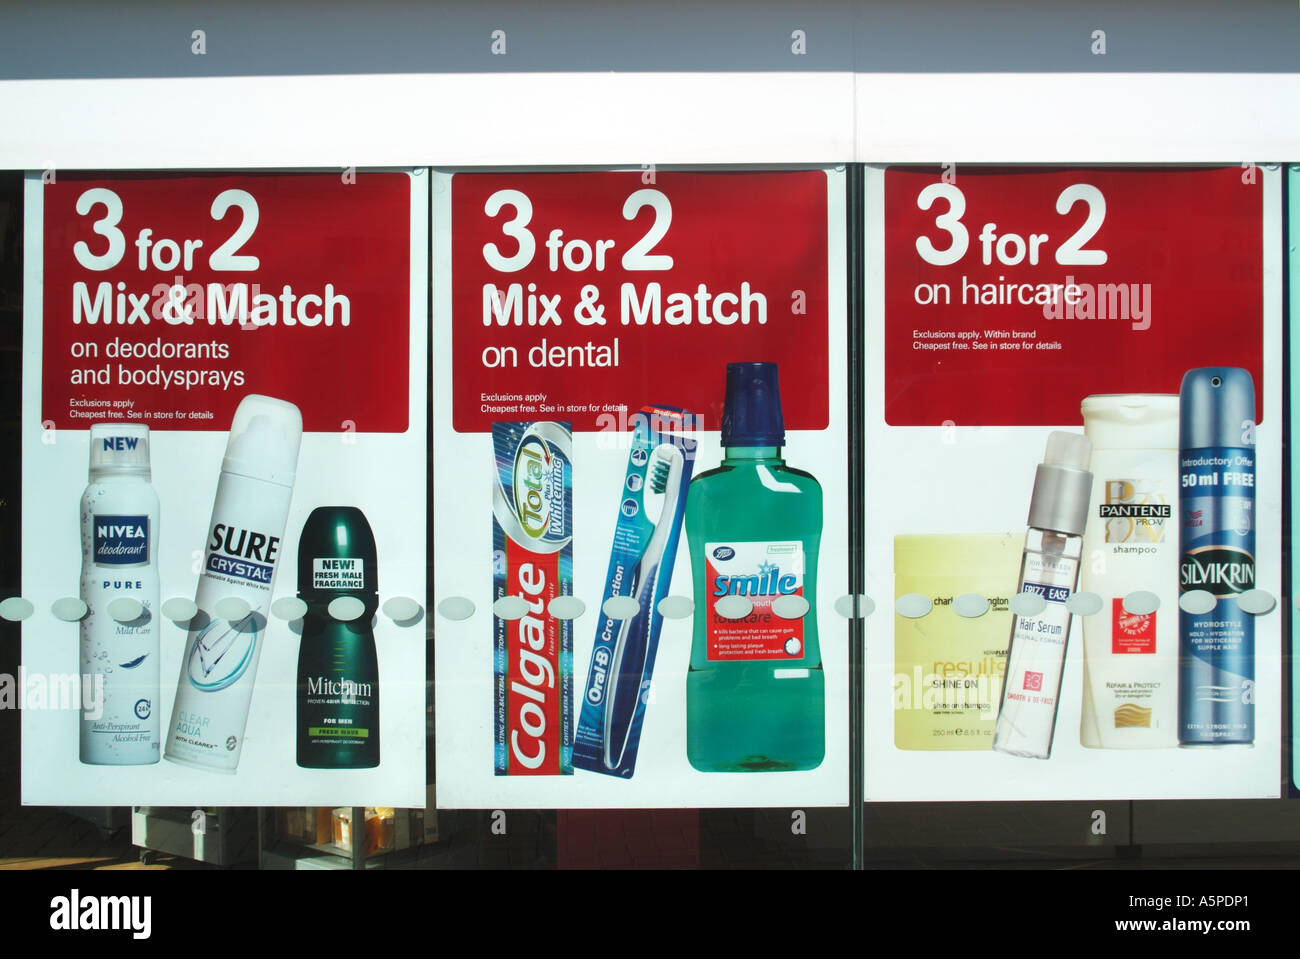 Très grande publicité Mix & Match dans la grande boutique fenêtre avant faisant la promotion de 3 offres spéciales pour 2 sur les déodorants Produits dentaires et de soins capillaires Royaume-Uni Banque D'Images